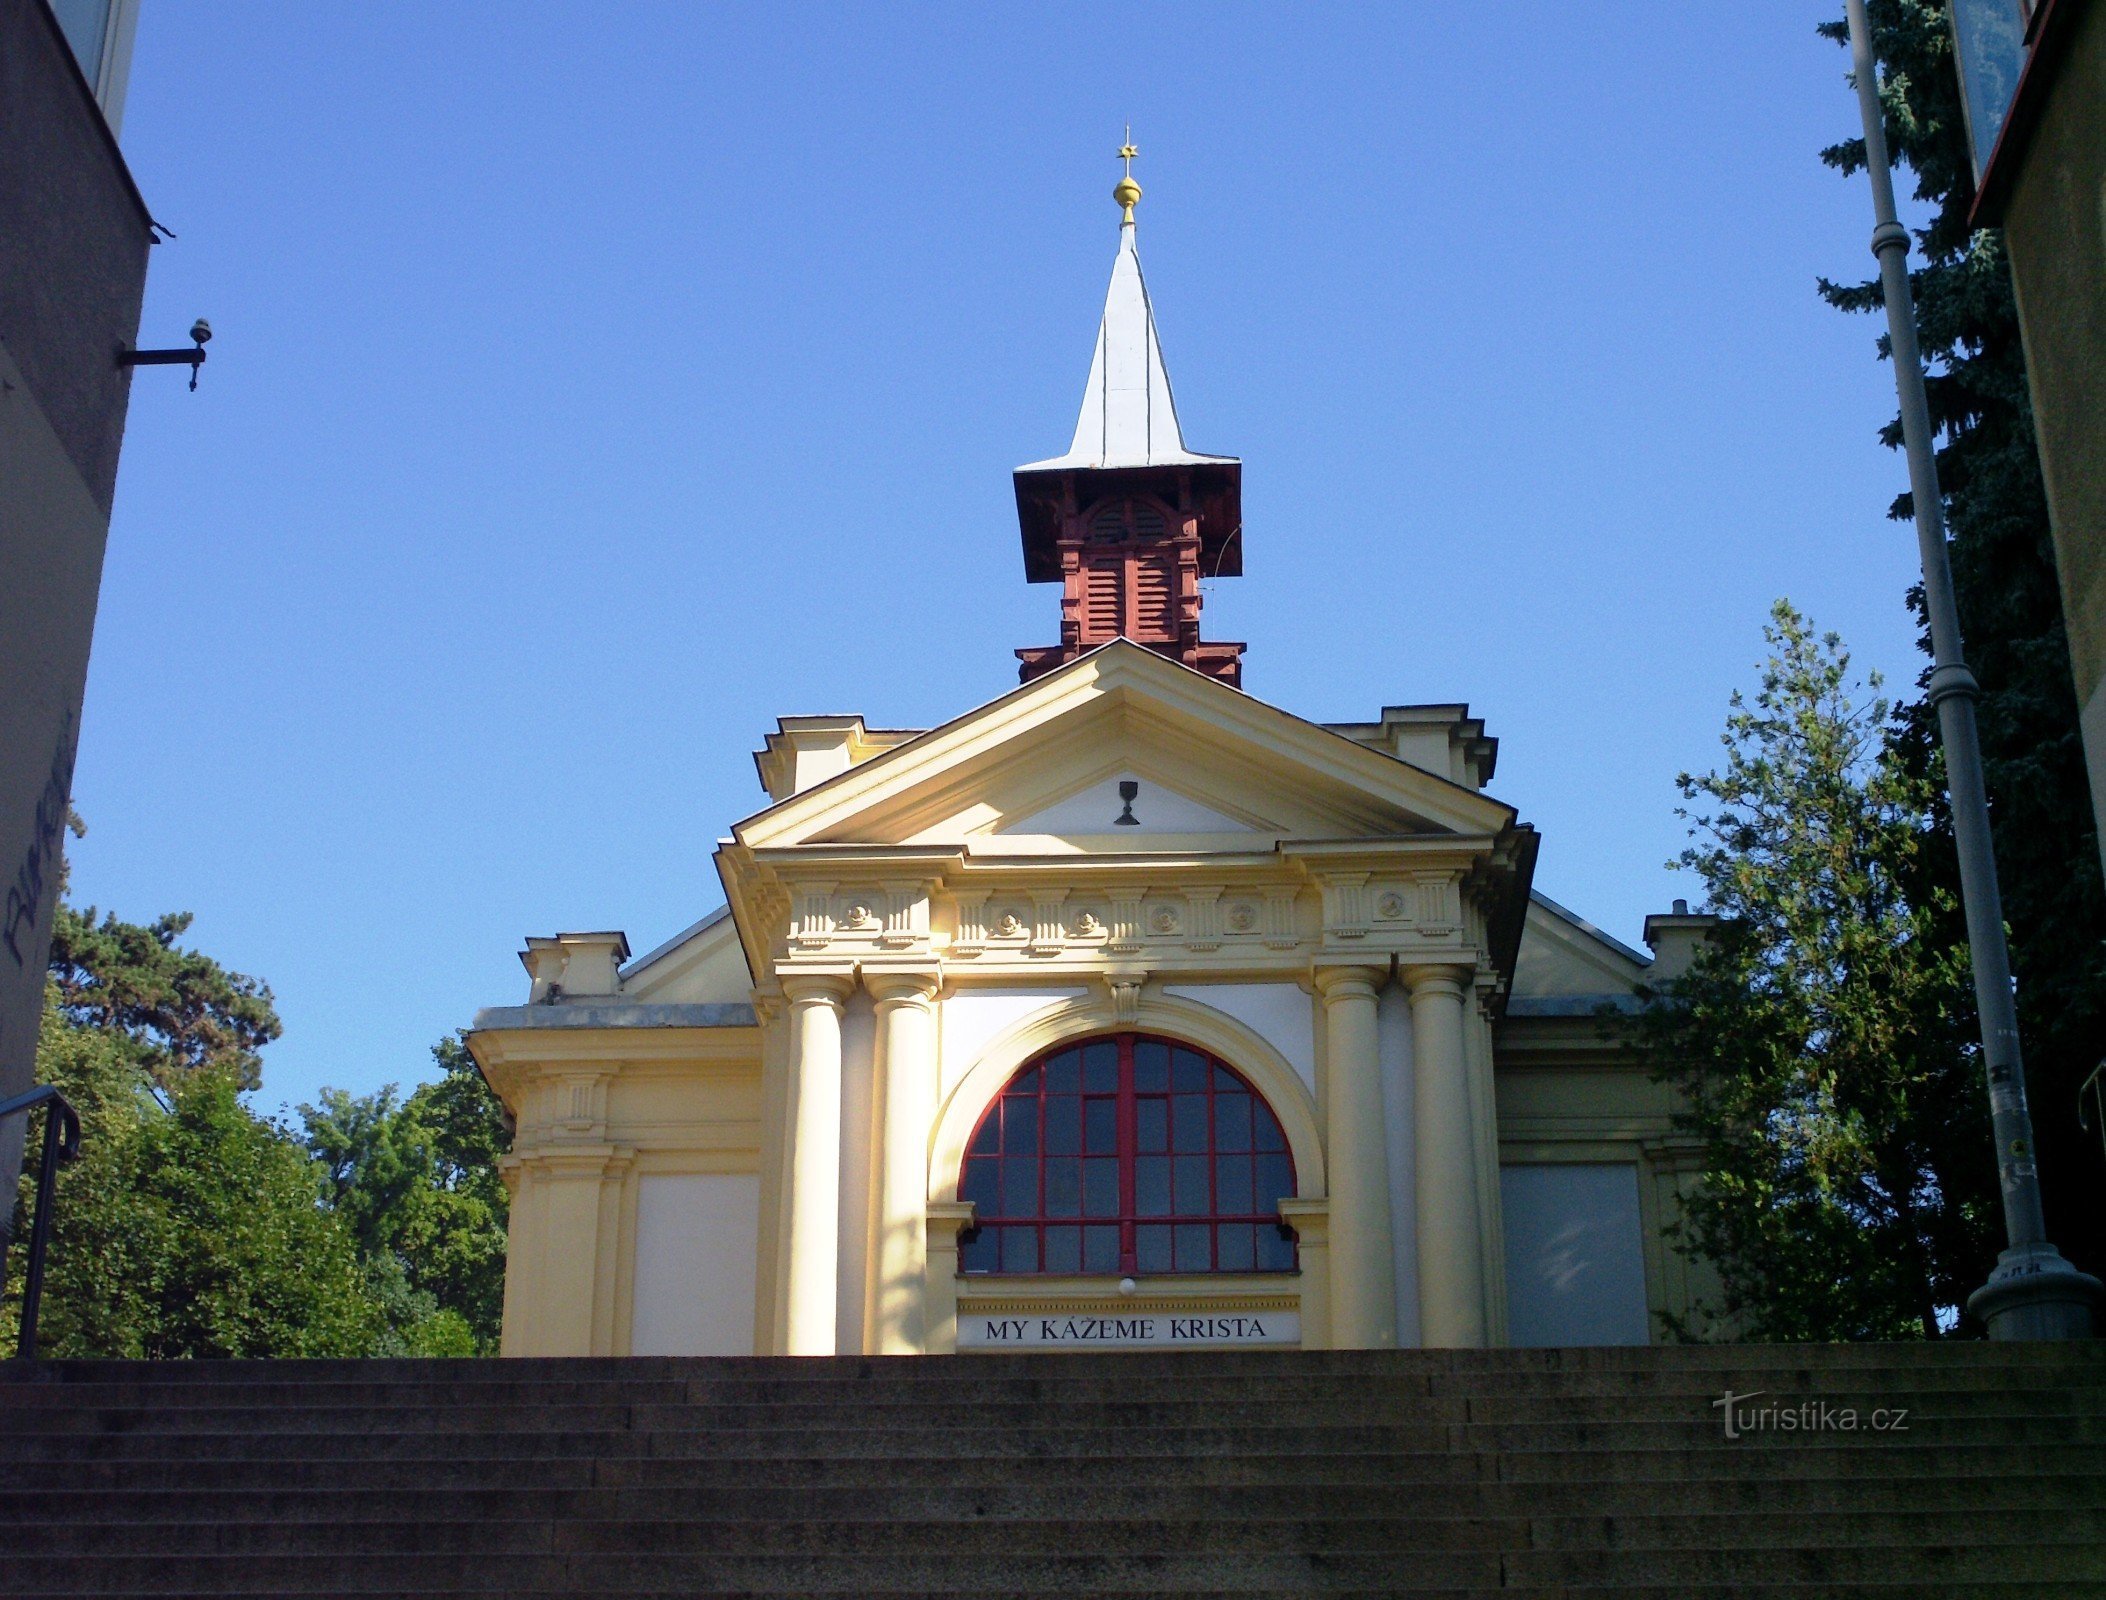 Brno - Betlehemi templom